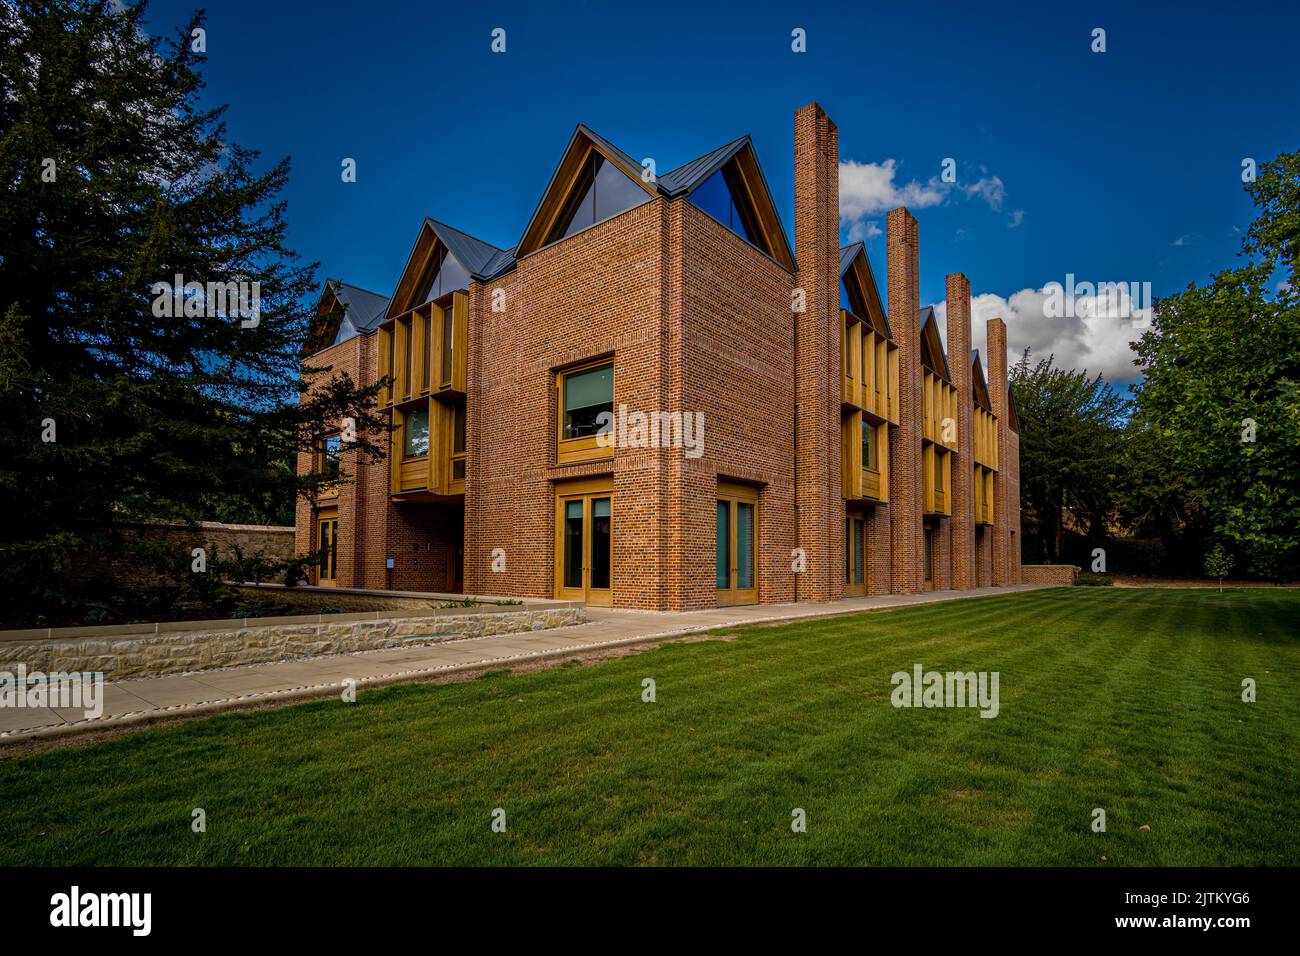 Die Neue Bibliothek am Magdalene College, Teil der Cambridge University. Architekt Niall McLaughlin Architects 2022, nominiert für den Stirling-Preis 2022. Stockfoto